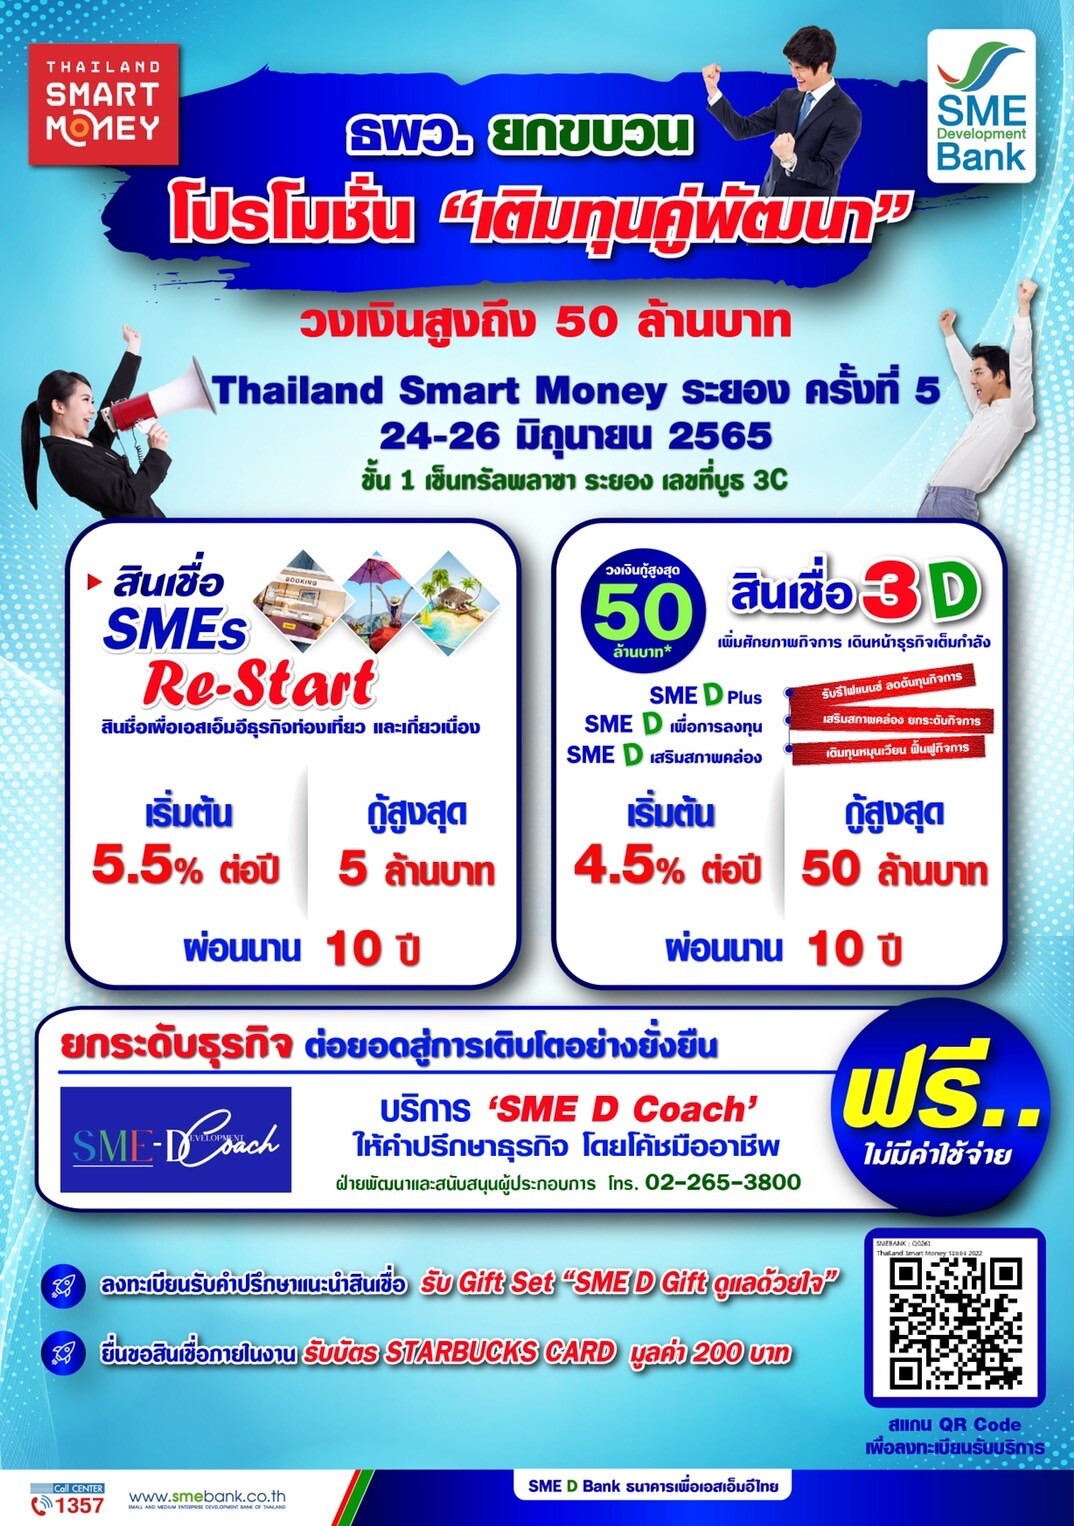 ธพว. เดินหน้าหนุนเอสเอ็มอีไทยเต็มกำลัง ยกขบวนสินเชื่อ วงเงินกู้สูง 50 ลบ. จัดเต็มในงาน 'Thailand Smart Money RAYONG' พบกัน 24-26 มิ.ย.65 บูธ 3C